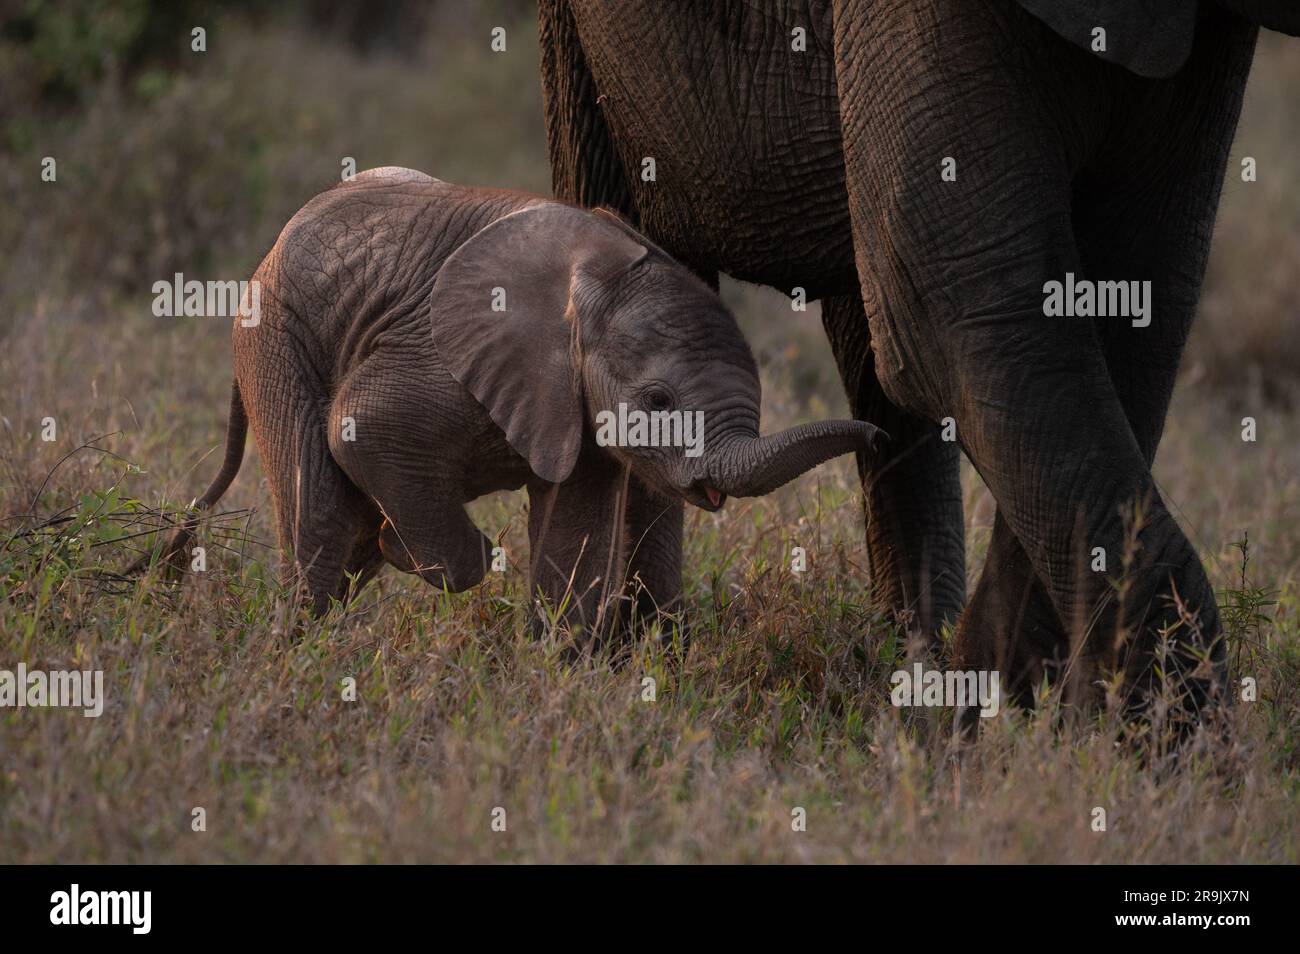 Un bébé éléphant, Loxodonta africana, marchant à côté de ses jambes de mères. Banque D'Images